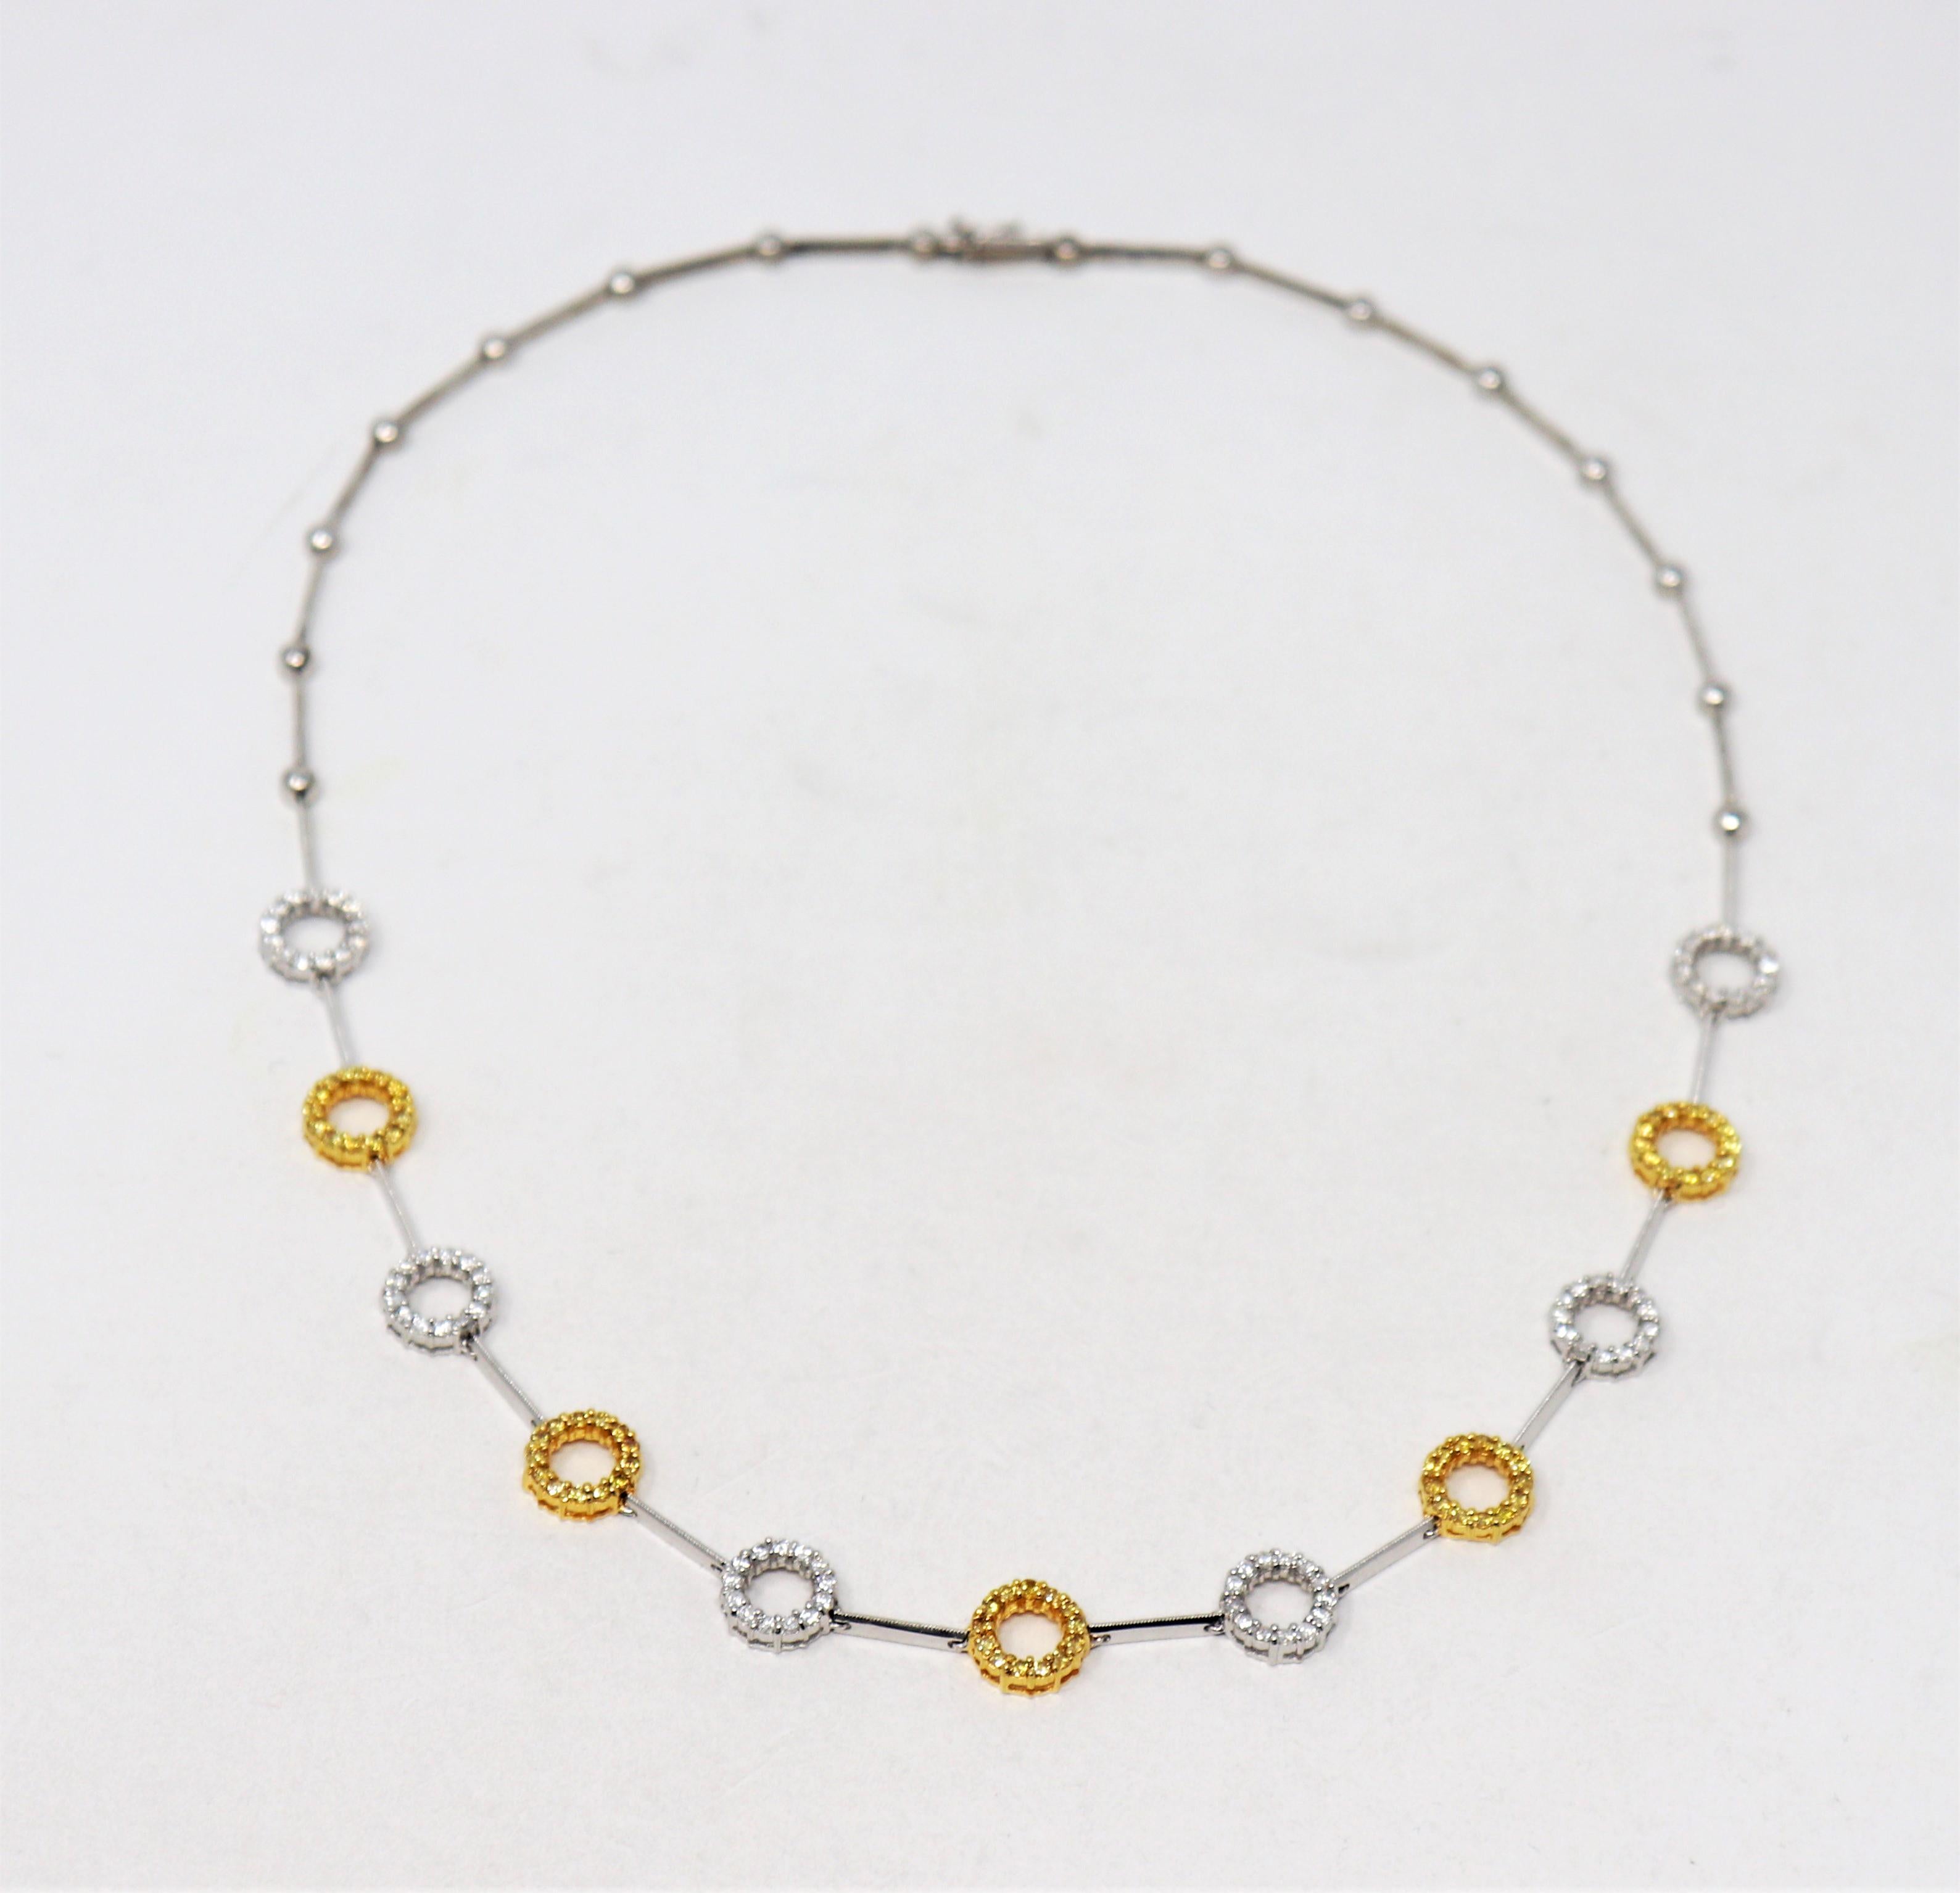 Dies ist eine schöne zweifarbige Halskette mit glitzernden, gepflasterten Diamanten. In den zarten, offenen Kreisen wechseln sich naturweiße und gelbe Steine ab, die durch schlanke, polierte Glieder miteinander verbunden sind. Ein wirklich